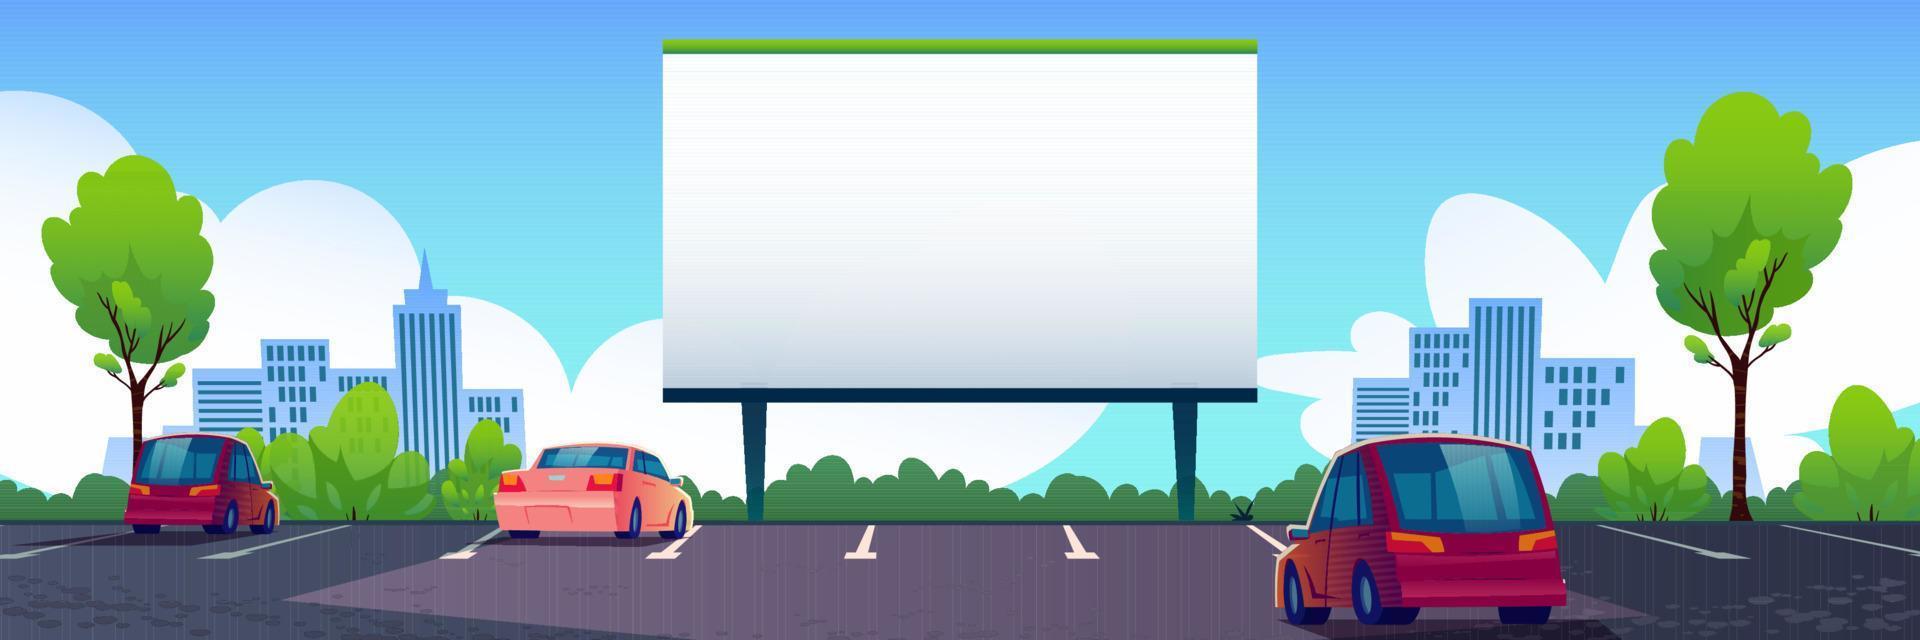 cine callejero de coches con cartelera de pantalla en blanco vector